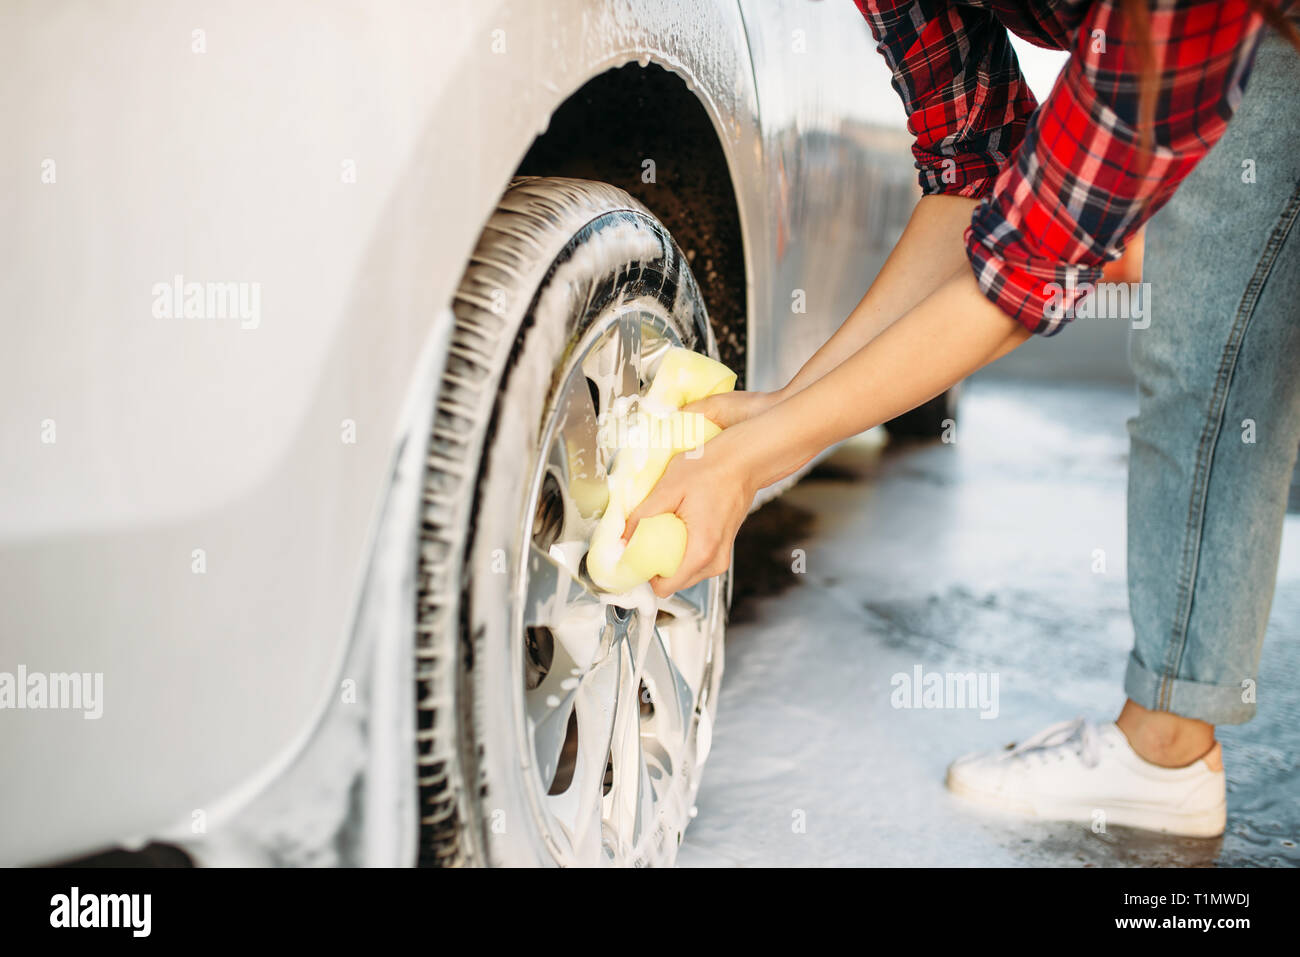 Carino donna di lavaggio delle ruote del veicolo con schiuma Foto Stock